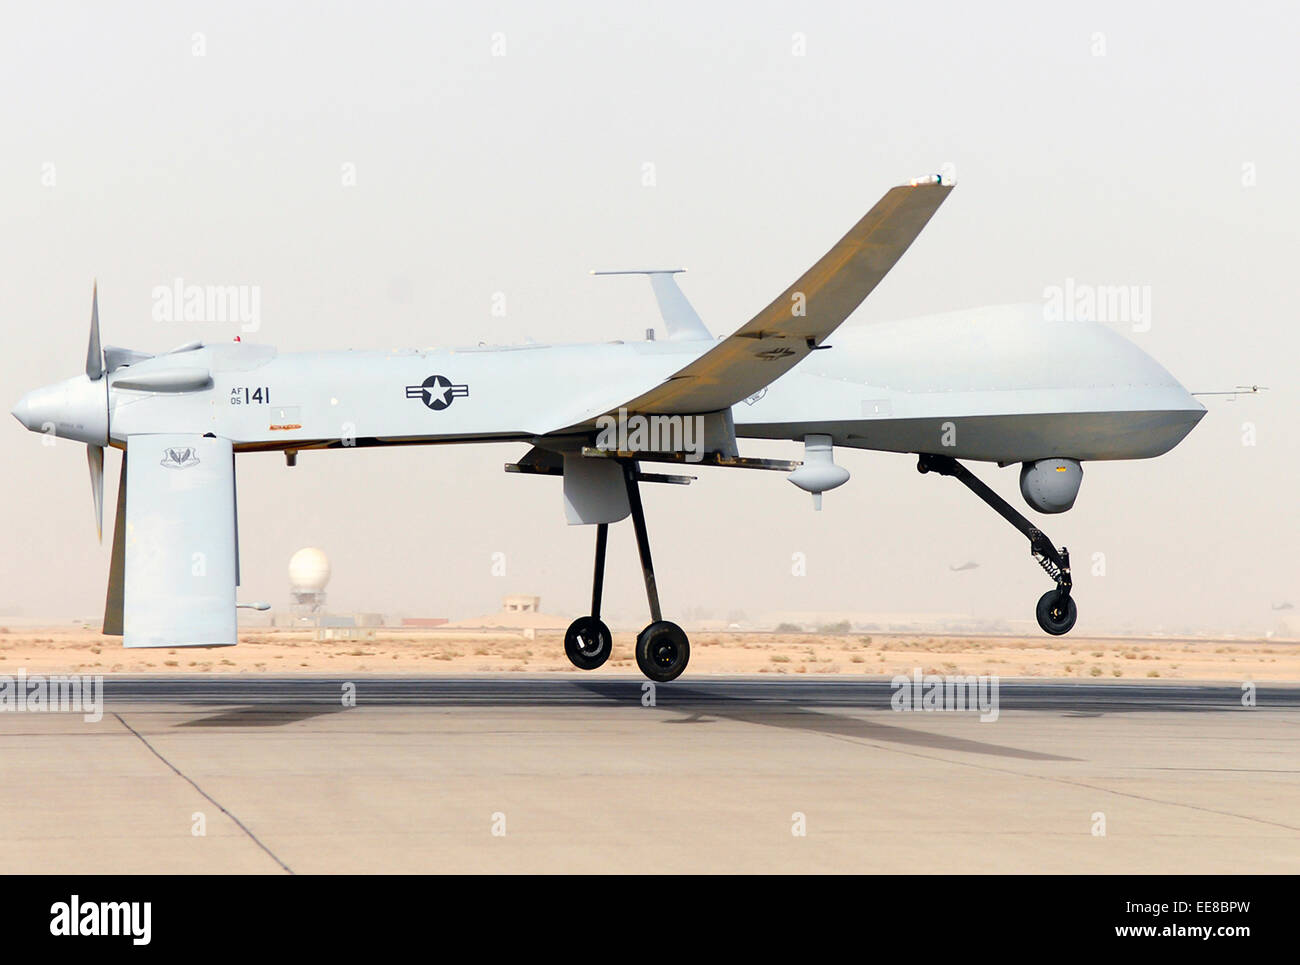 MQ-1 Predator unmanned aerial vehicles (UAV) zieht in Südwestasien. Siehe Beschreibung für mehr Informationen. Stockfoto